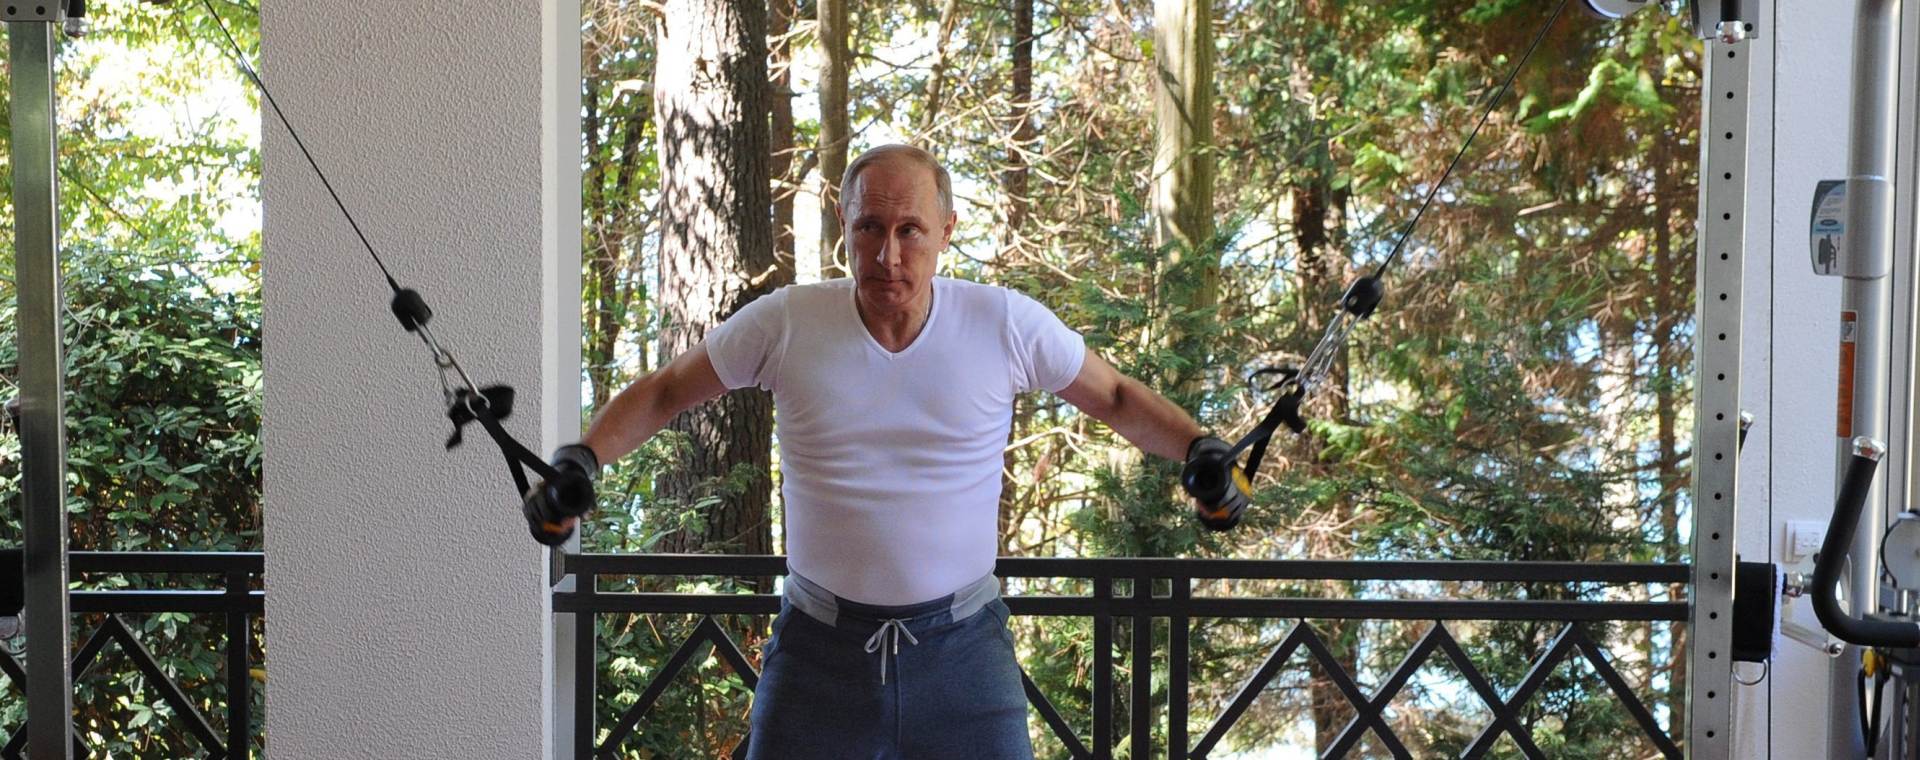 “MACHO” PREDSJEDNIK: Putin pokazao mišiće u teretani